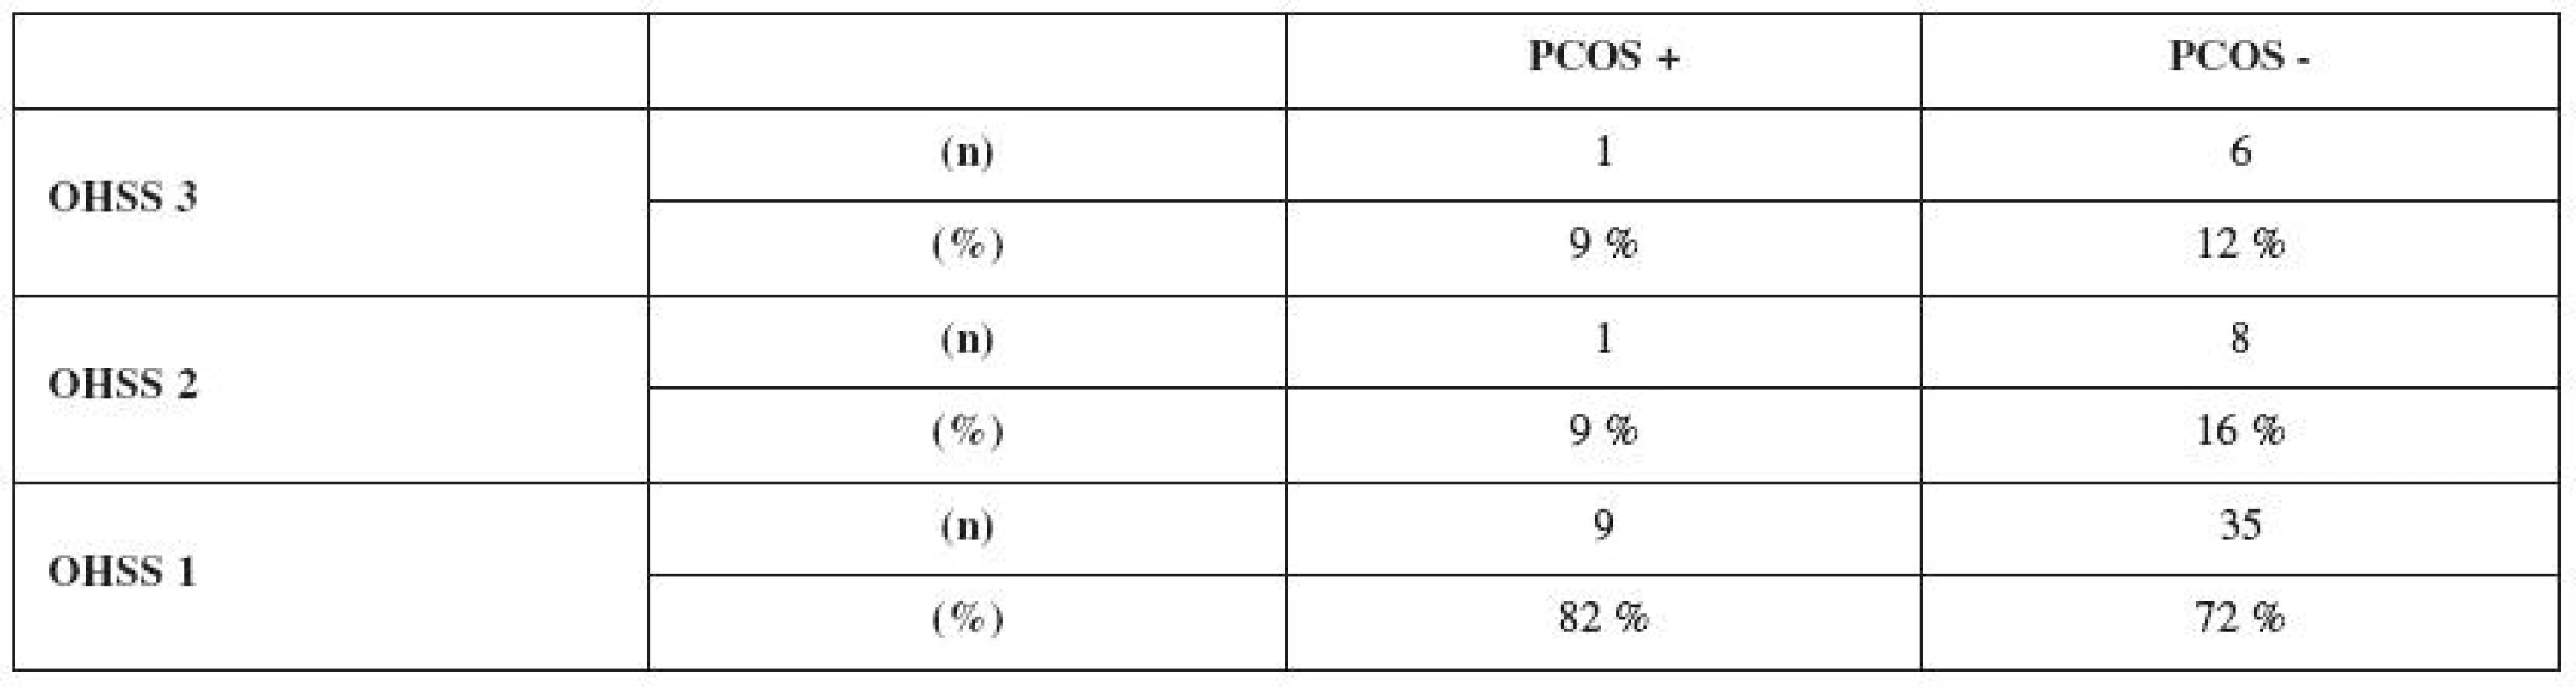 Distribuce mírné (OHSS 1), střední (OHSS 2) a závažné (OHSS 3) formy OHSS ve skupině pacientek se syndromem PCOS (PCOS+) a v kontrolní skupině (PCOS-). Hodnoceny byly pacientky s počtem rostoucich folikulů 18 a větším